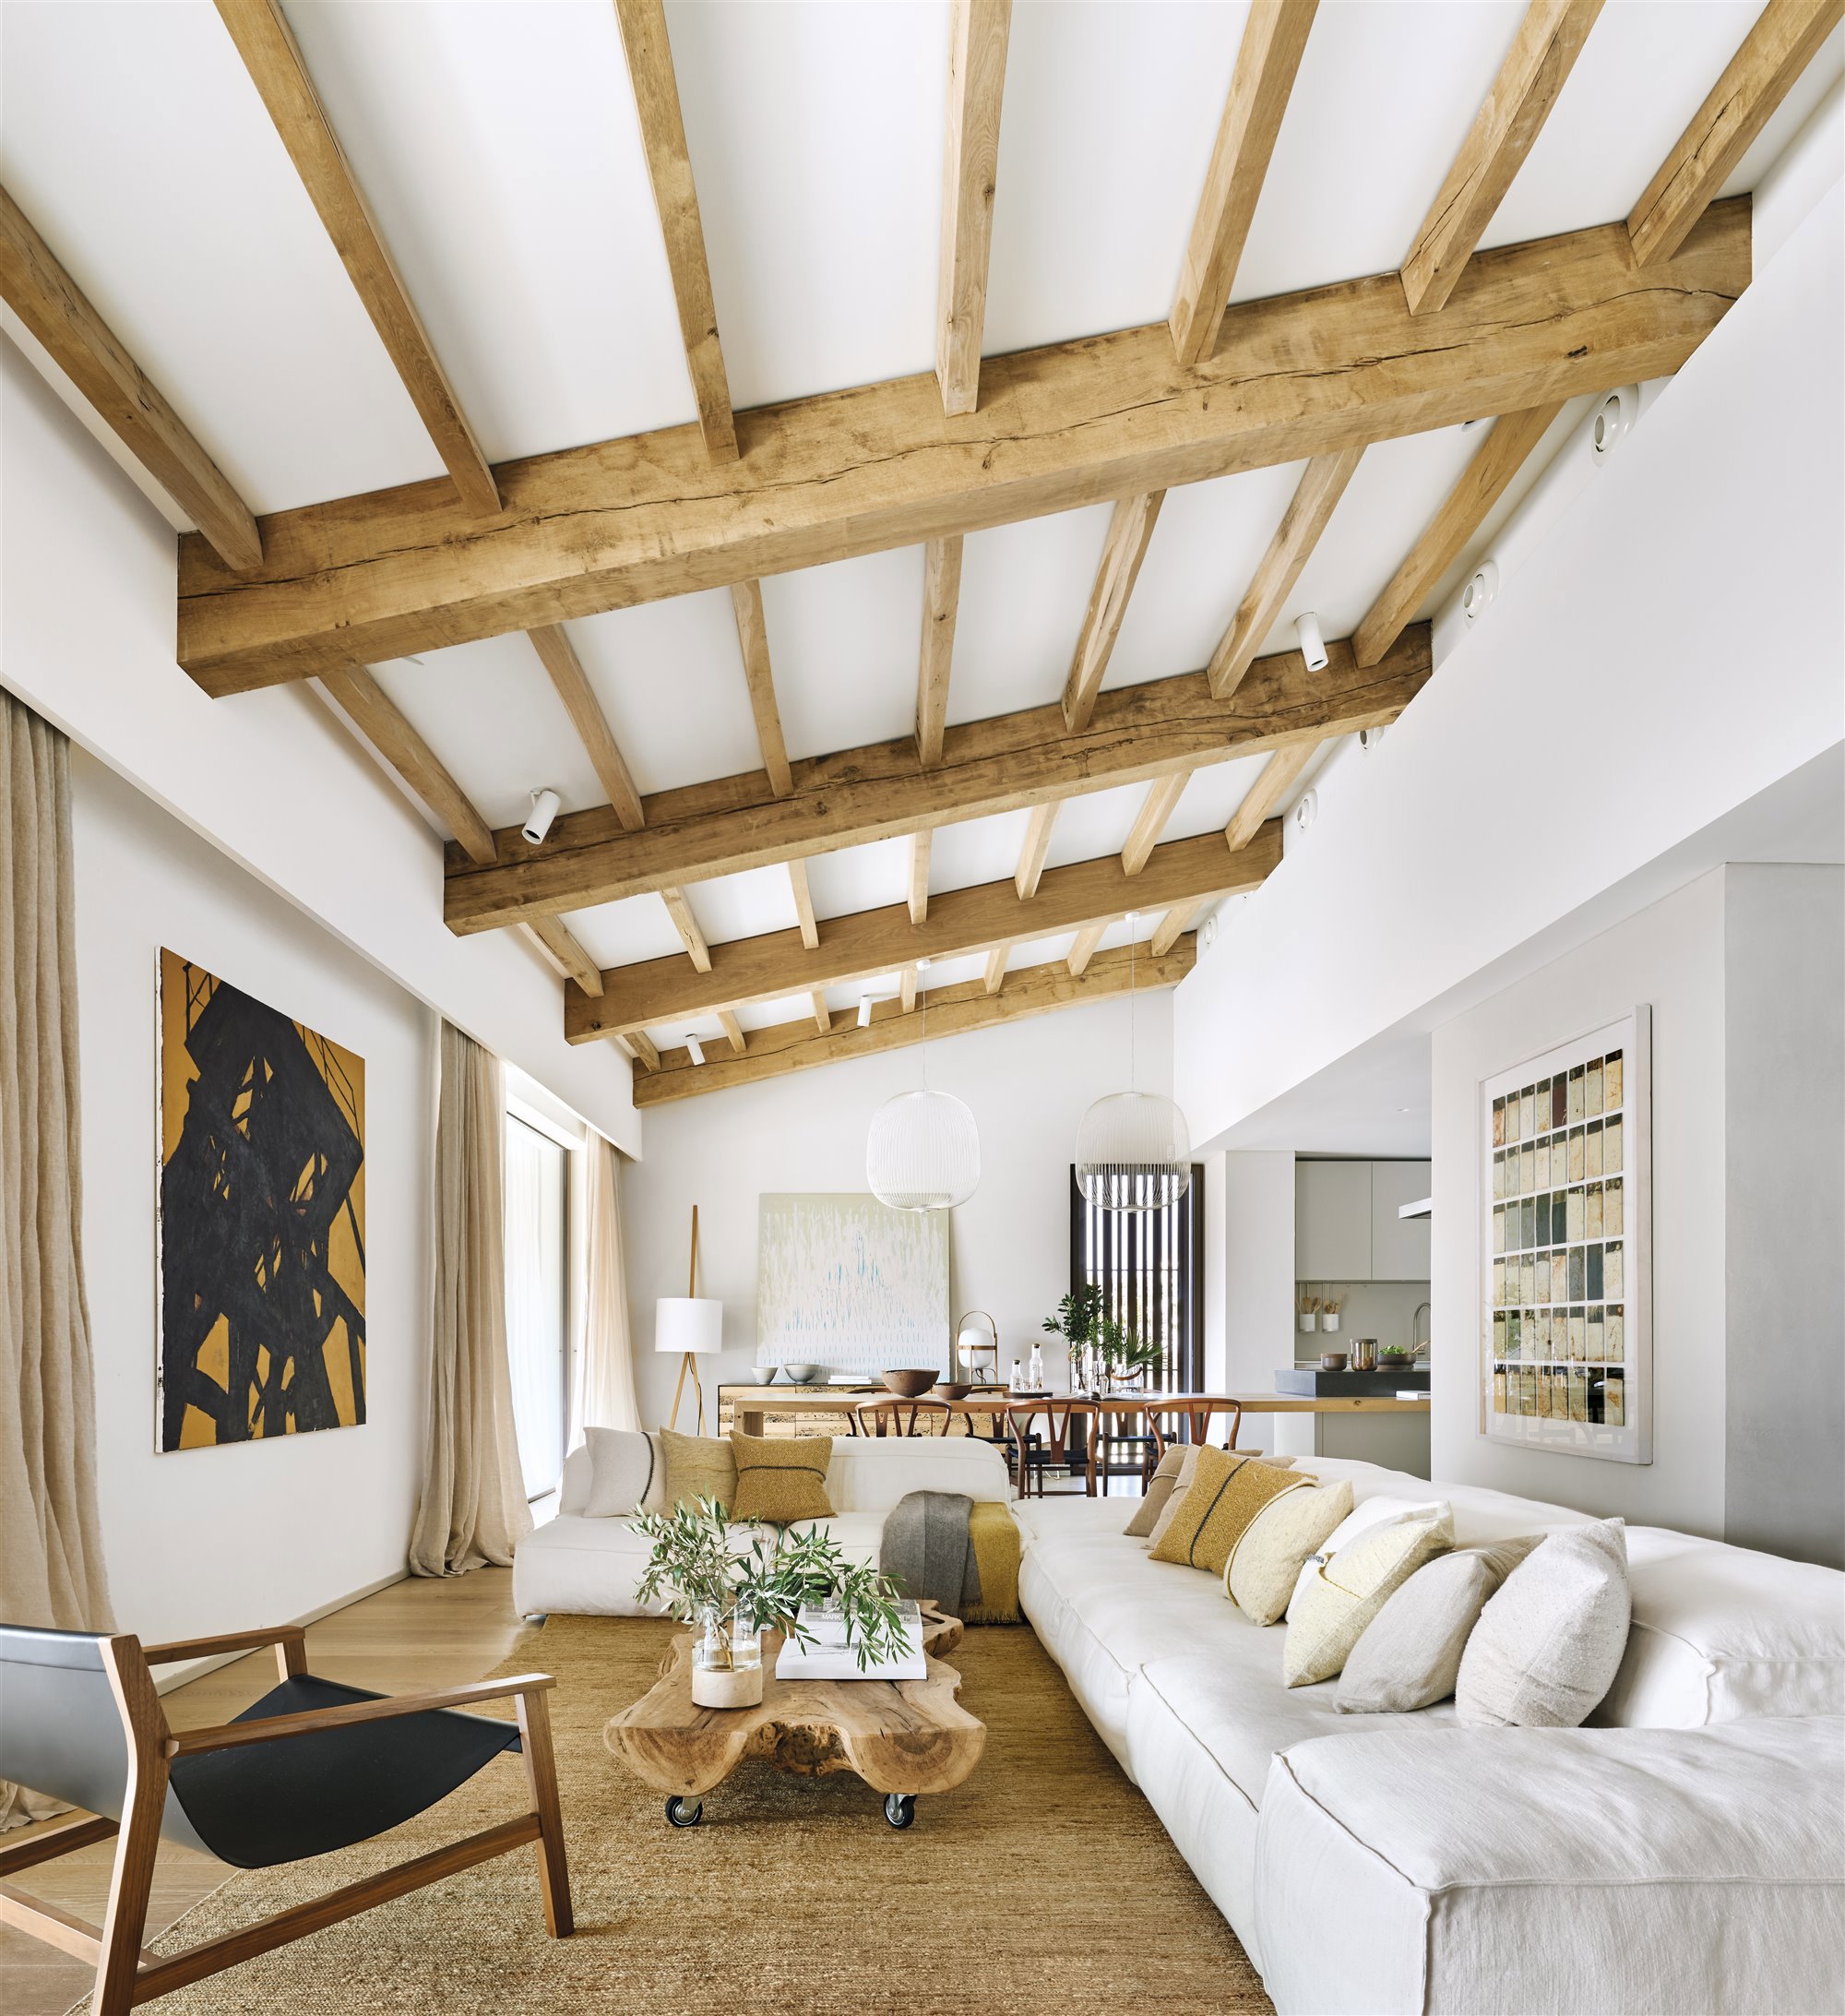 Salon de una casa moderna con vigas de madera vistas y sofa´ blanco